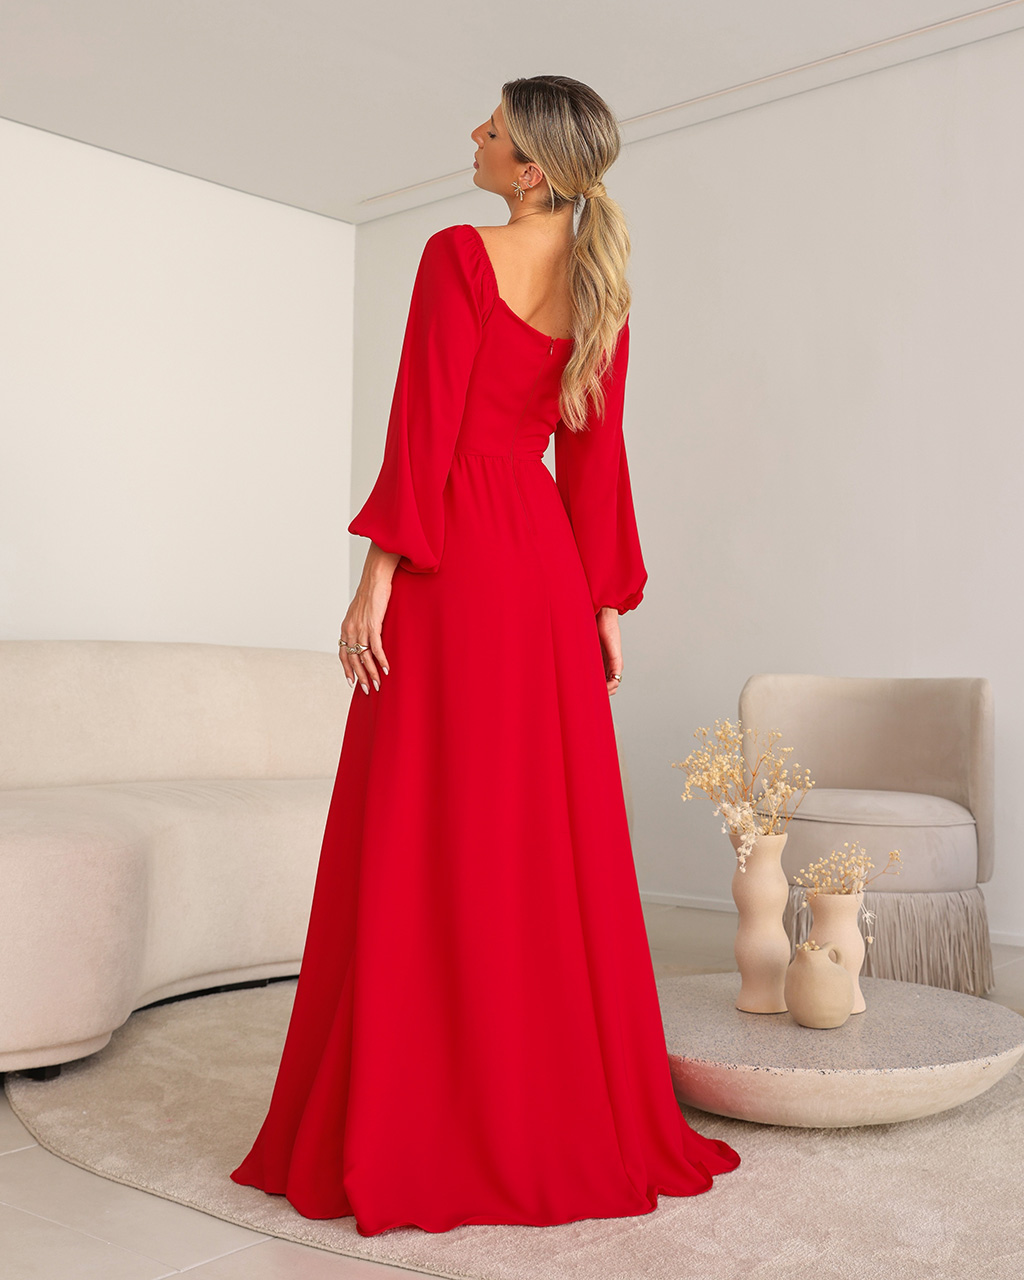 Vestido Longo Vermelho Adriana  - Empório NM